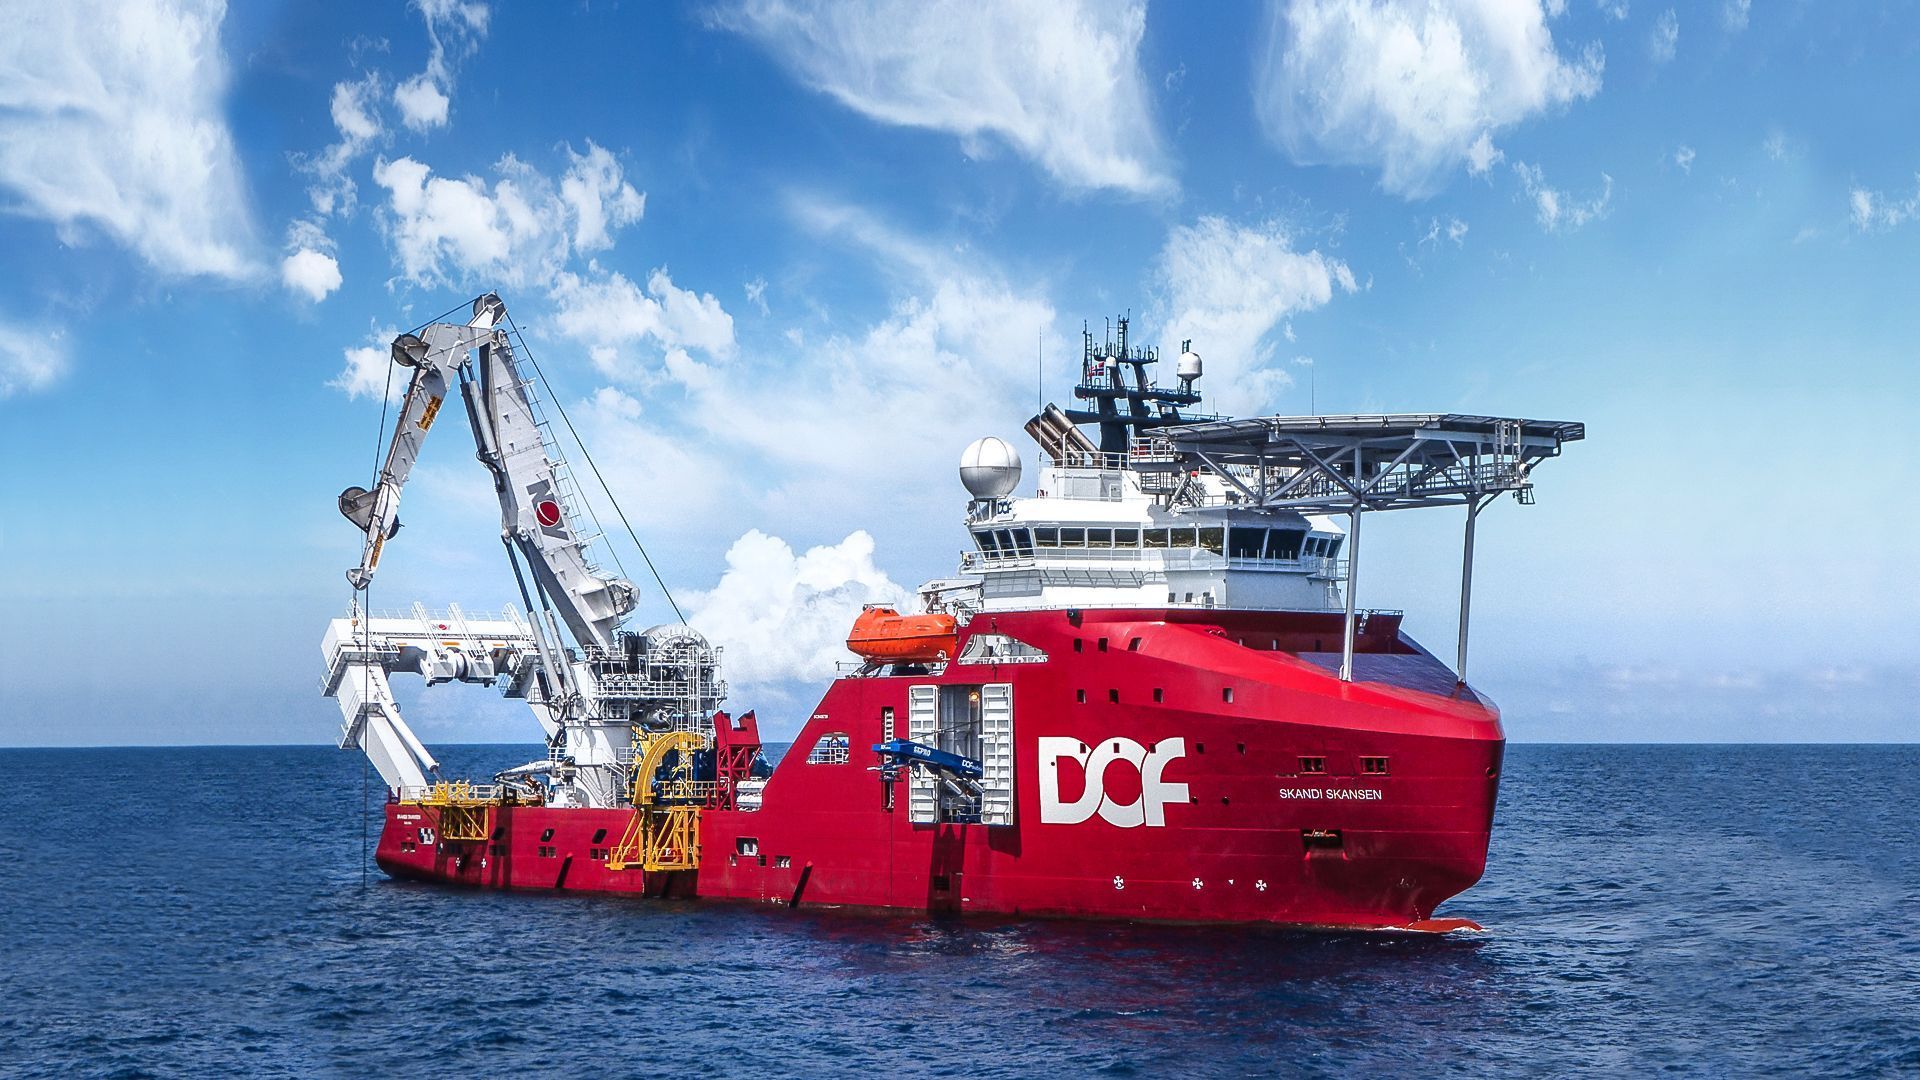 A estatal brasileira Petrobras firmou a extensão de quatro contratos com a companhia de logística marítima DOF Subsea, que fornecerá agora seus serviços de operação de navios de apoio para garantir mais qualidade na produção de petróleo nos campos brasileiros.